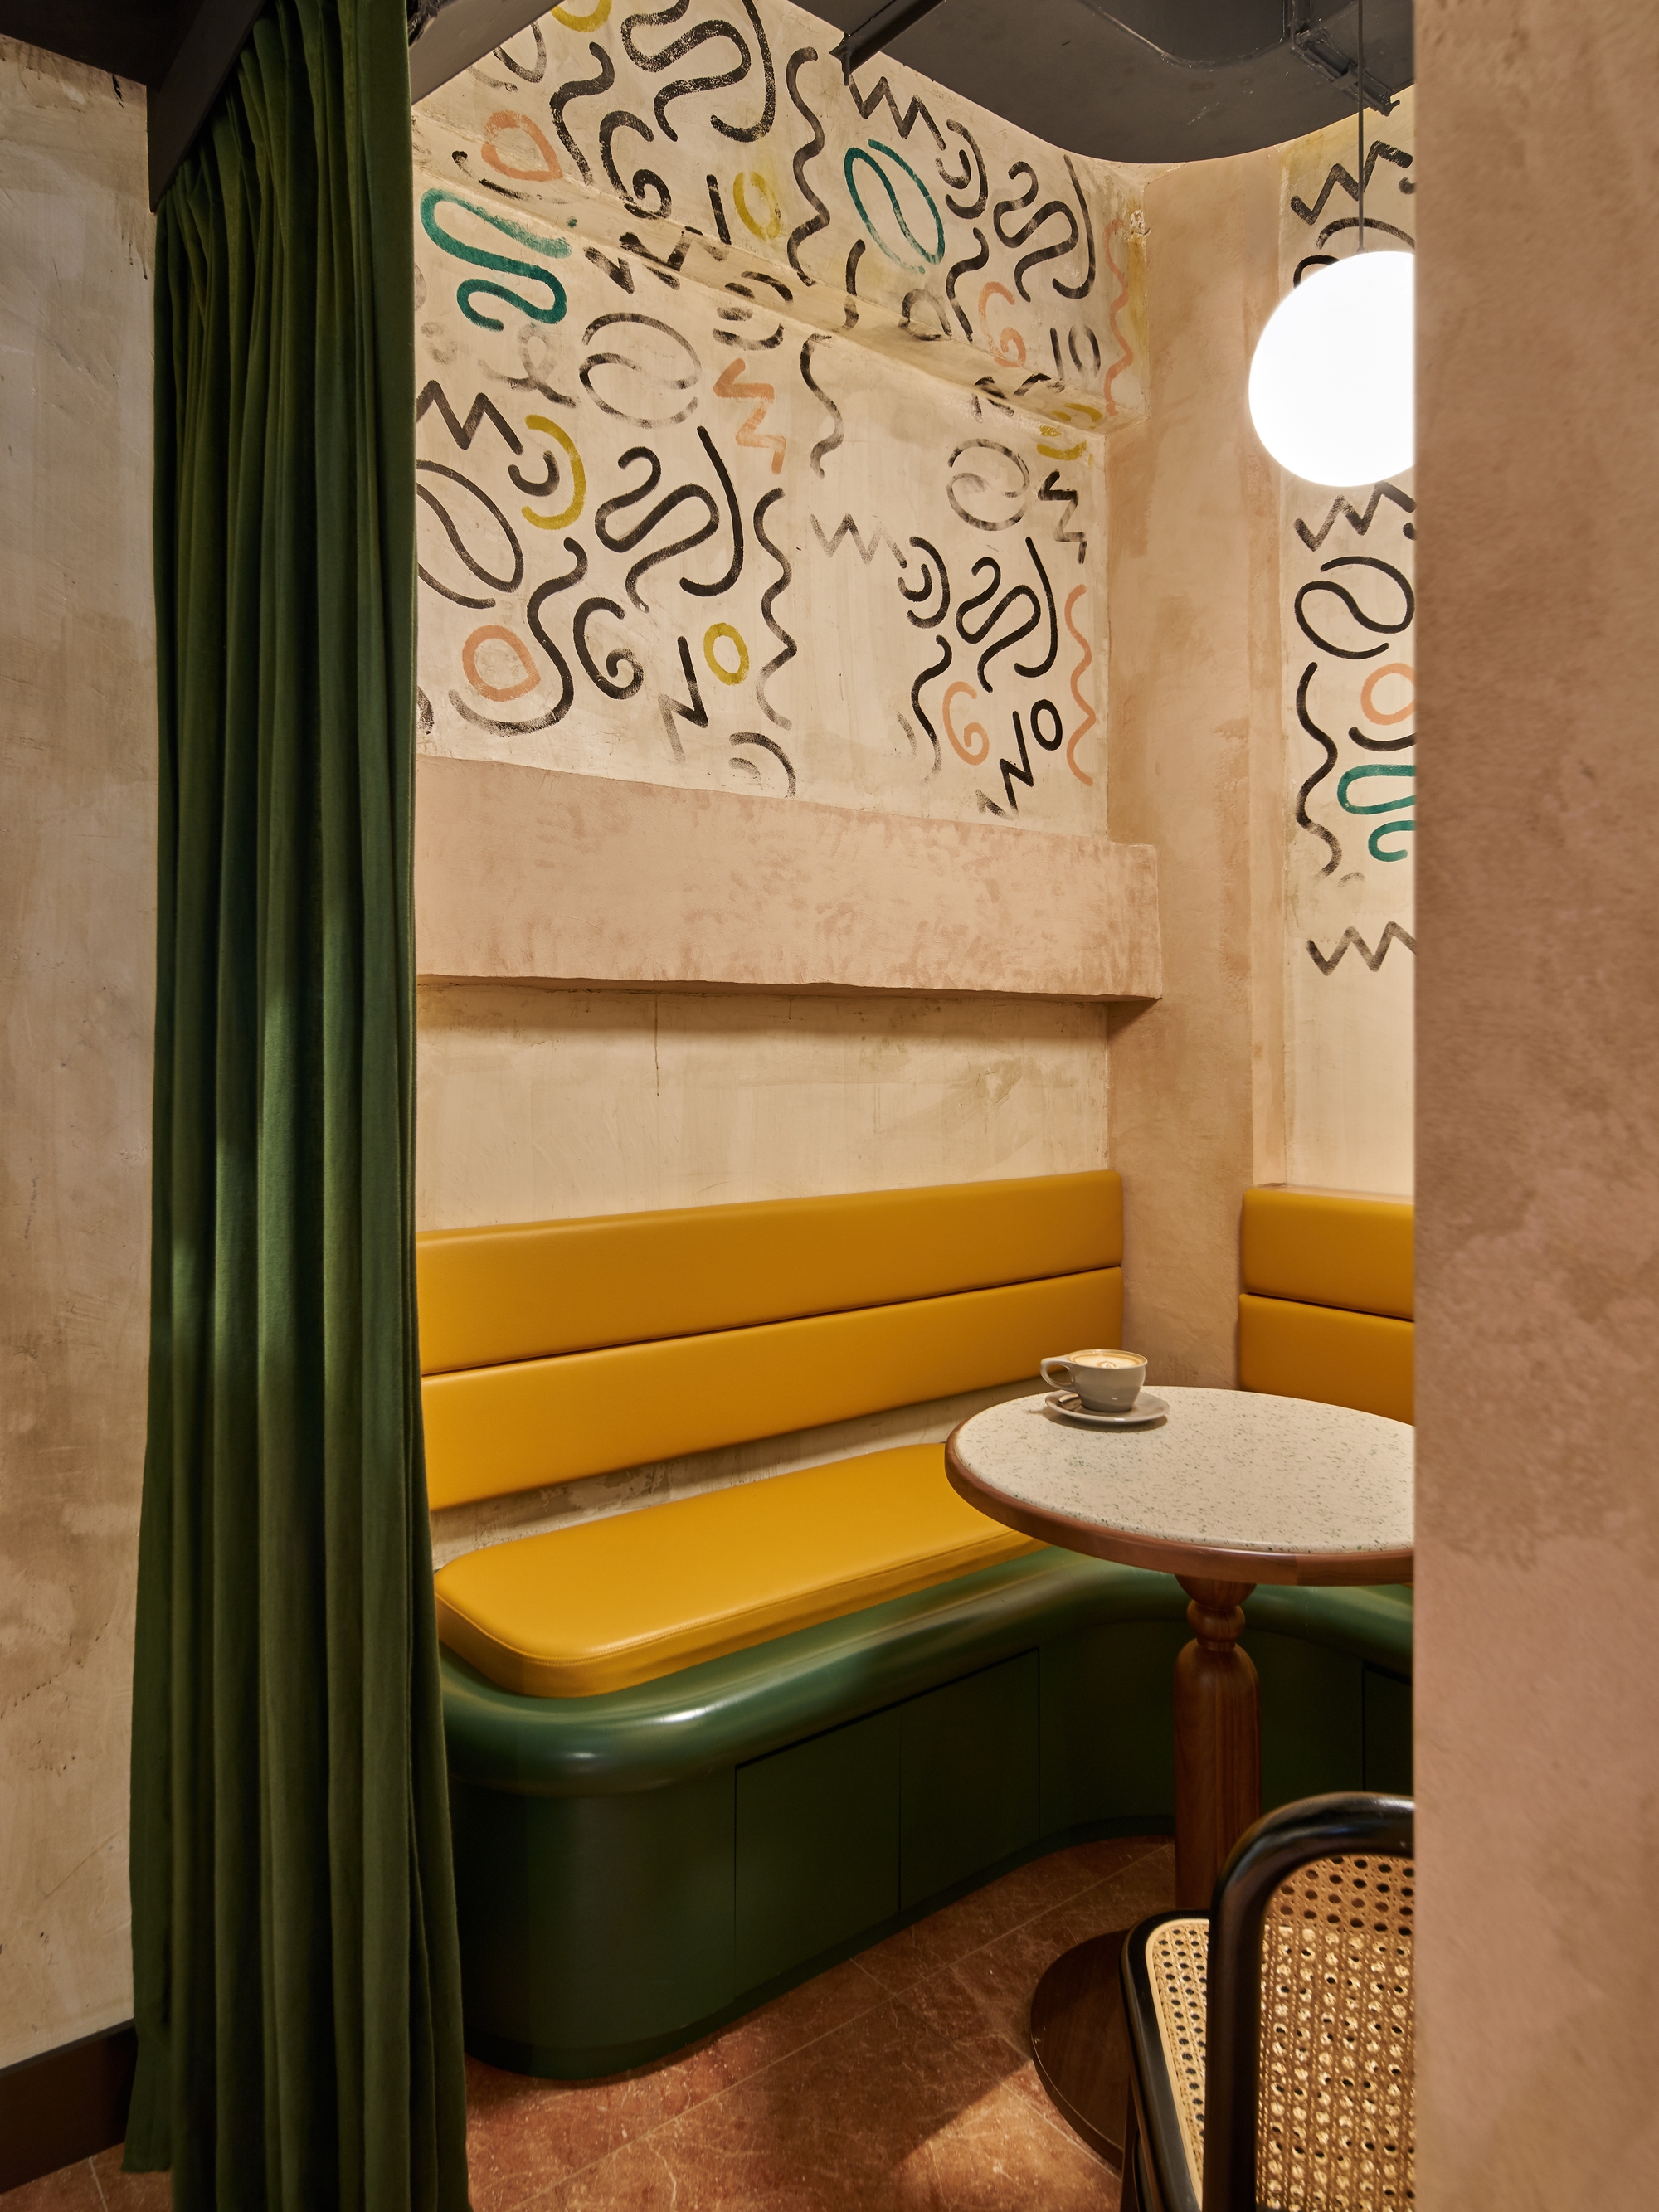 图片[6]|Coffeelin咖啡馆和酒吧|ART-Arrakis | 建筑室内设计的创新与灵感